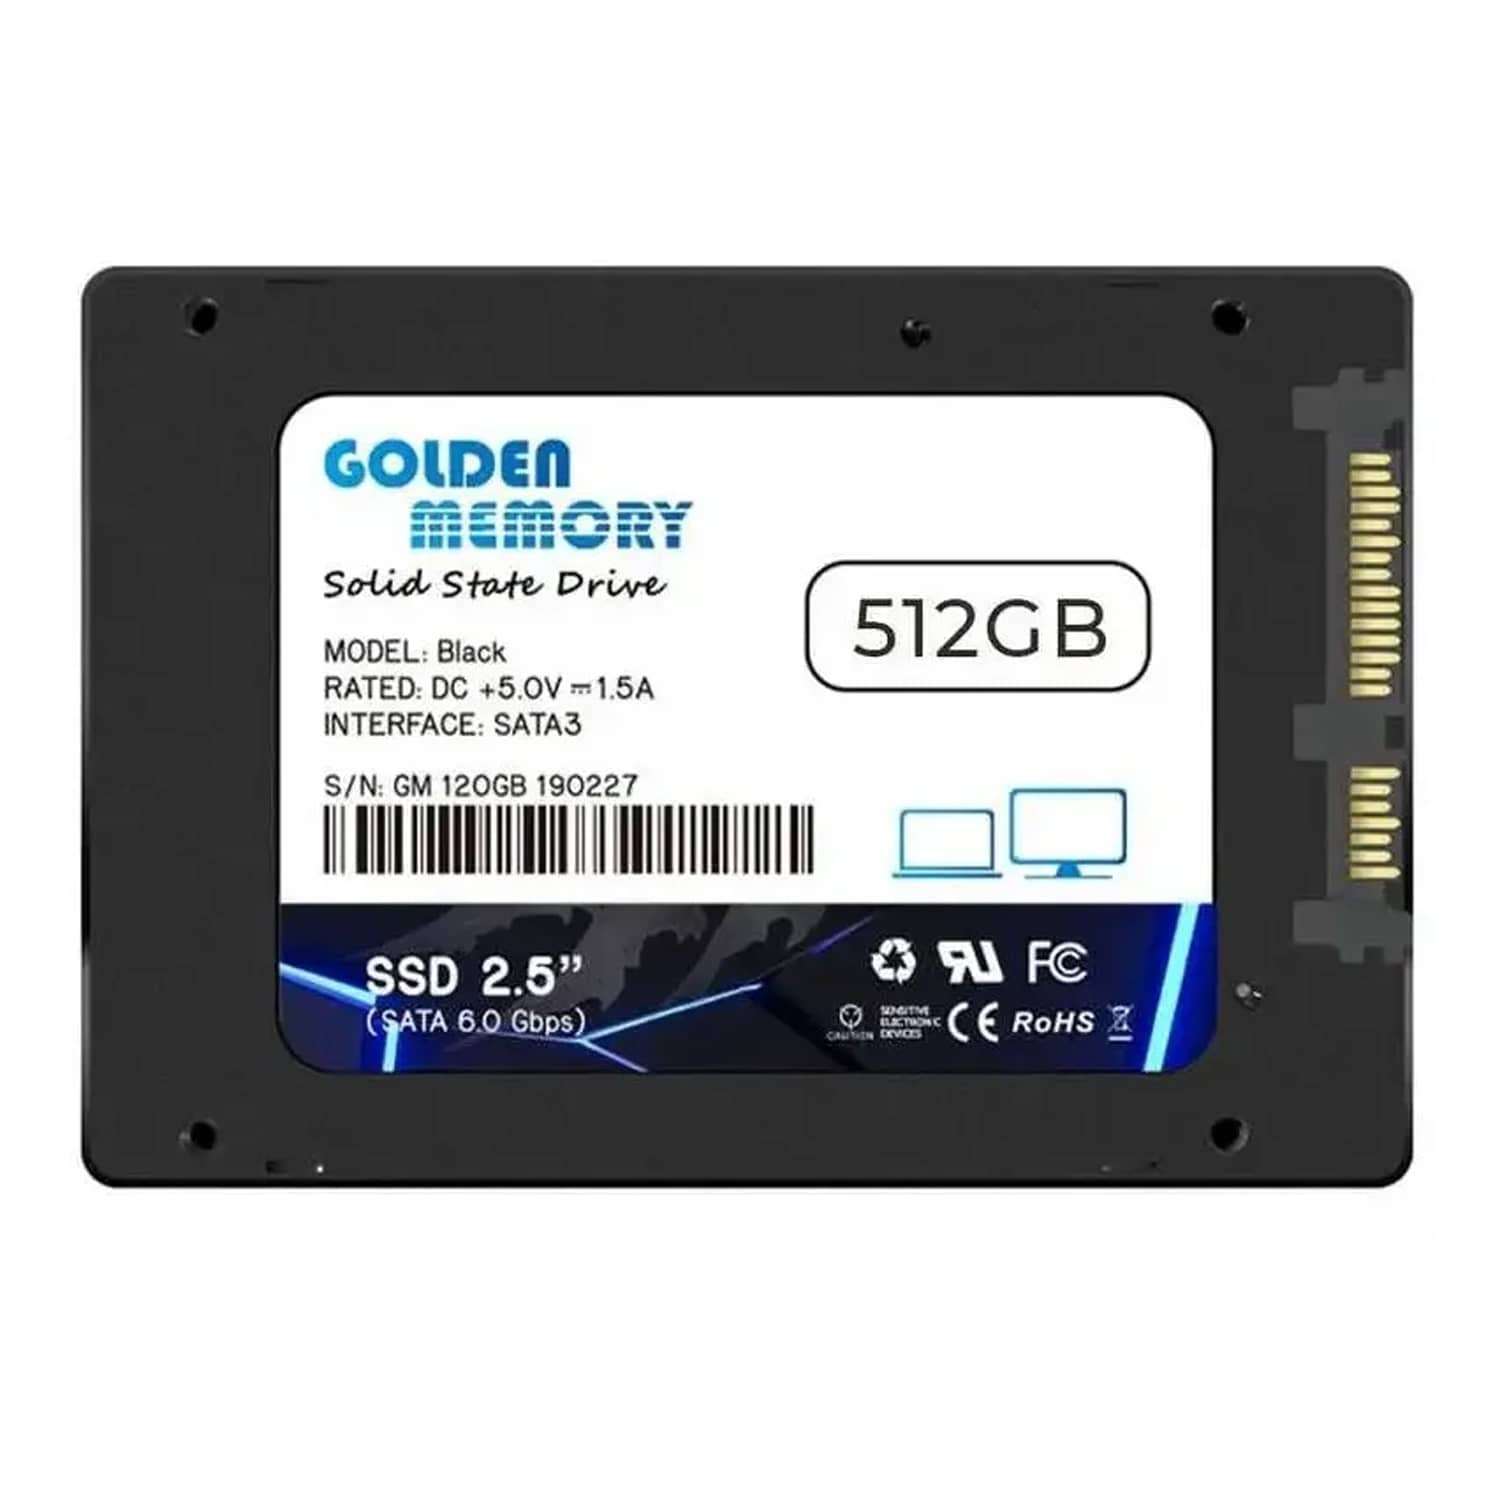 Tacón Enriquecimiento Espectador Disco Duro Solido Golden 512GB Sata 3 SSD 2.5 6.0 GBPS - GOLDEN